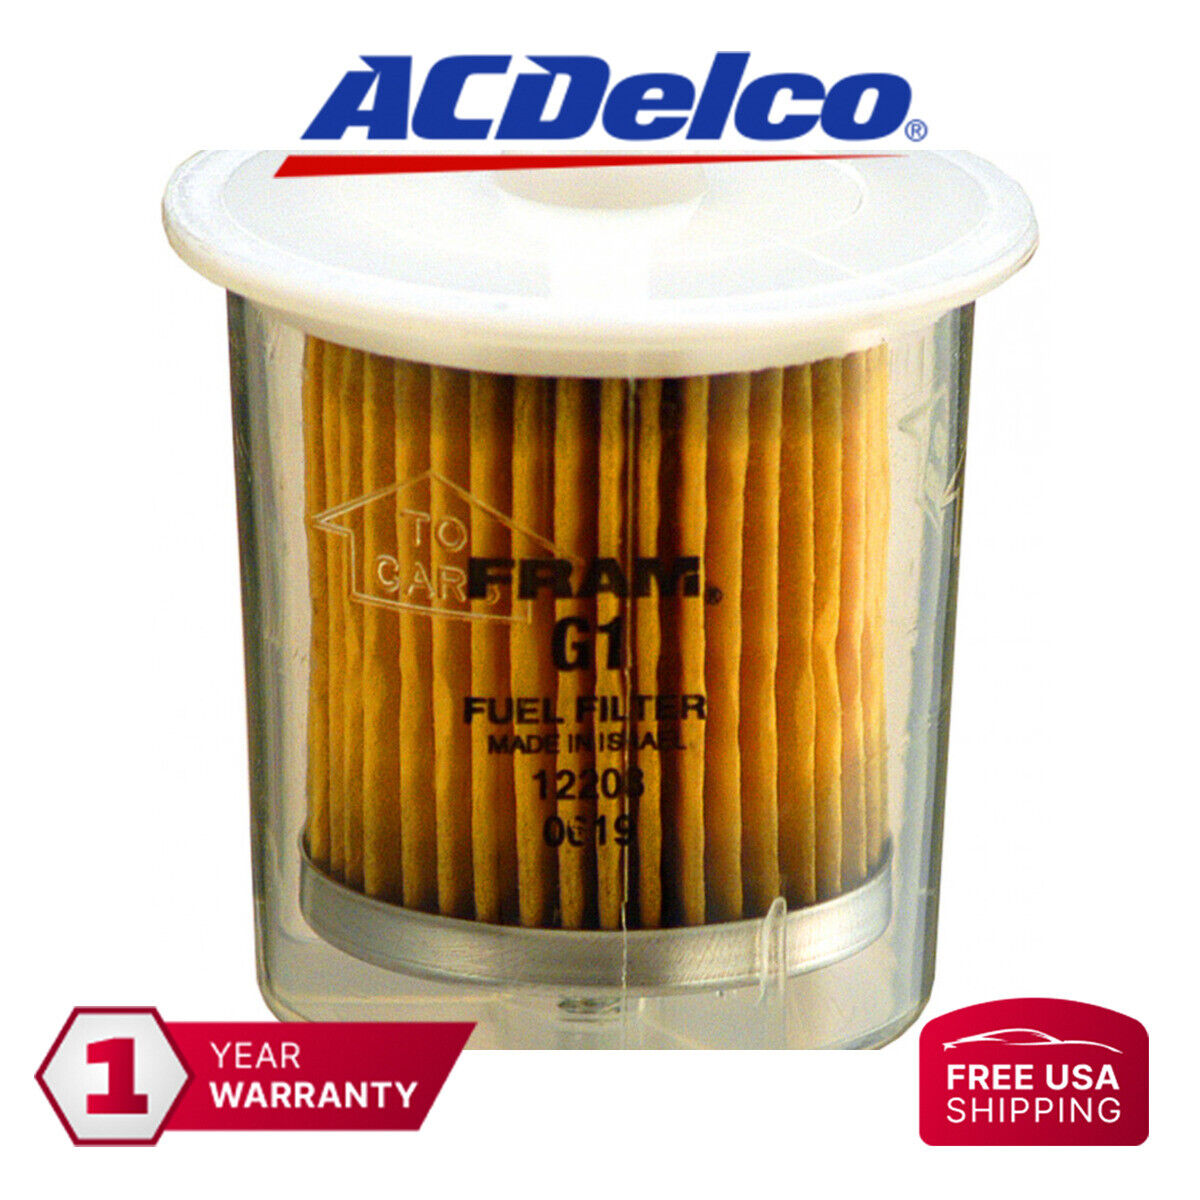 ACDelco Fuel Filter GF94